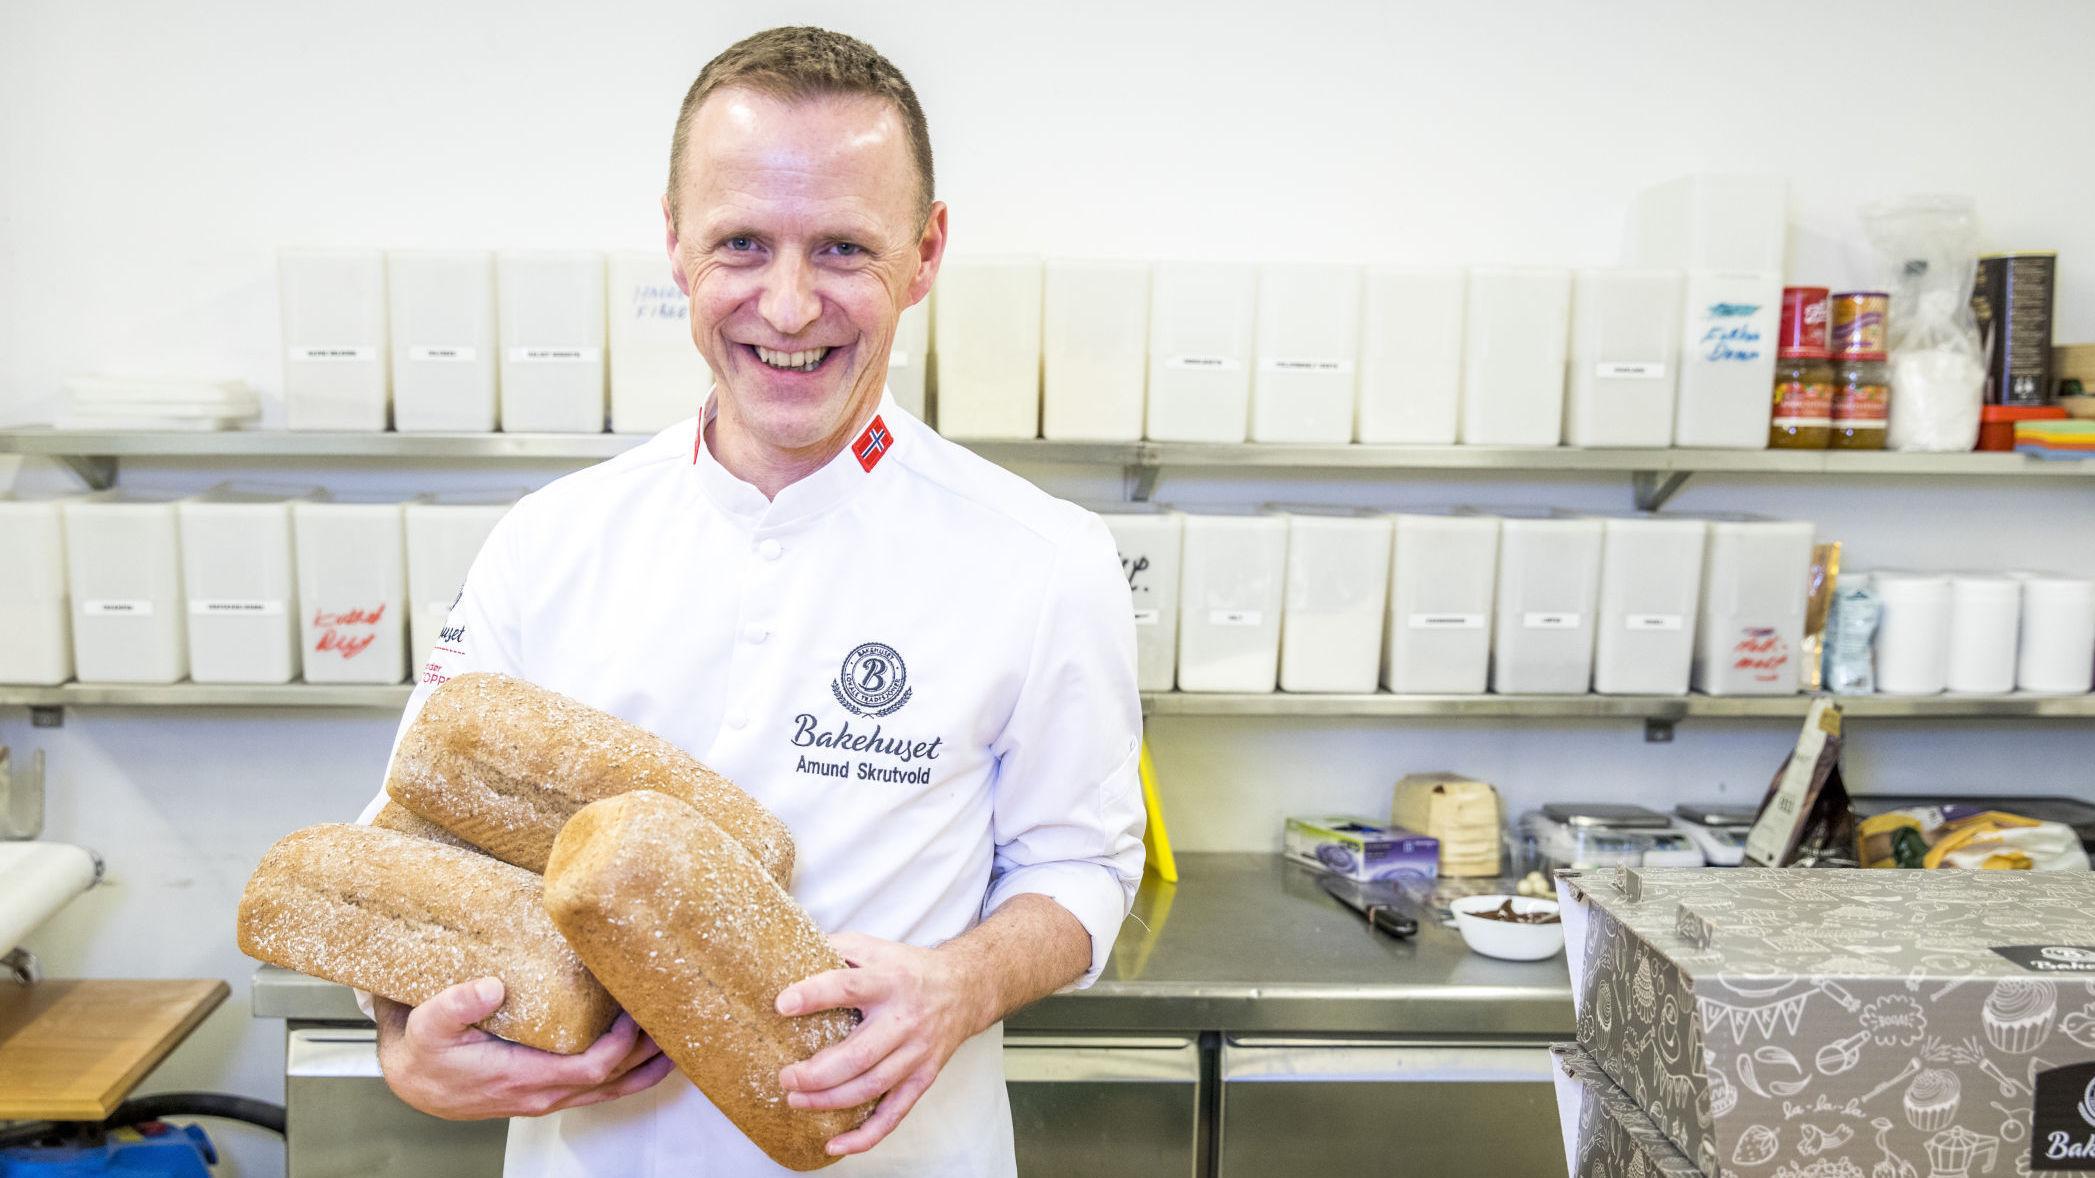 BAKERMESTER: Amund Skrutvold går i disse dager under kallenavnet OL-bakeren, hvor han sørger brød og bakervarer til de norske utøverne. Foto: Bakehuset